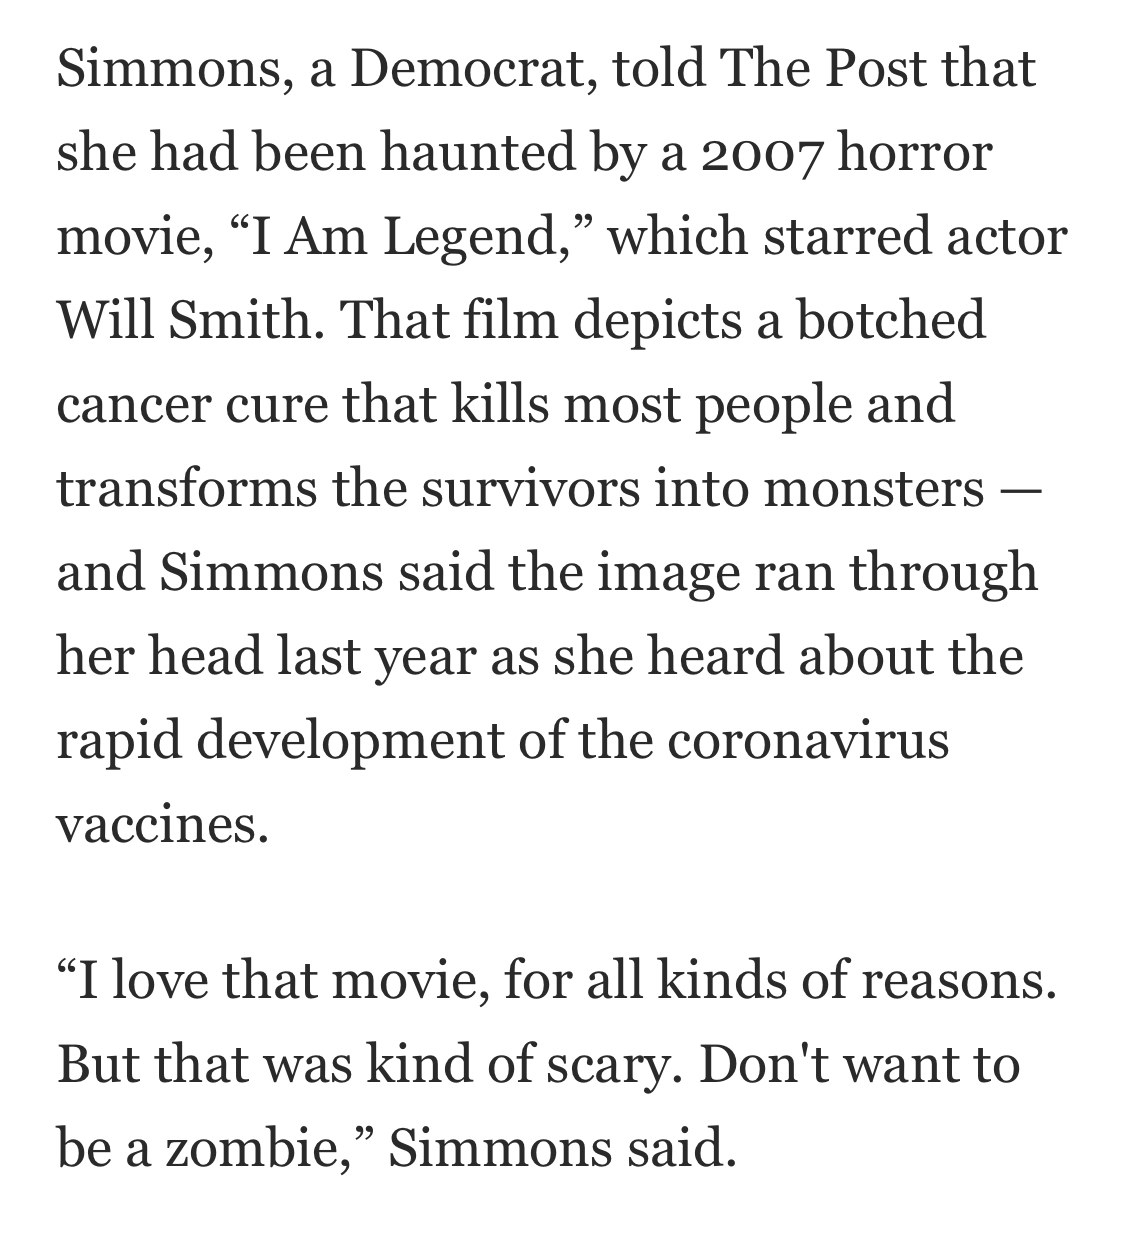 “西蒙斯,民主党人对《华盛顿邮报》说,她已经被2007年的恐怖电影,我是传奇,威尔史密斯主演的演员。那部电影描绘了一个拙劣的癌症治疗,杀死了大多数人把幸存者变成monsters"